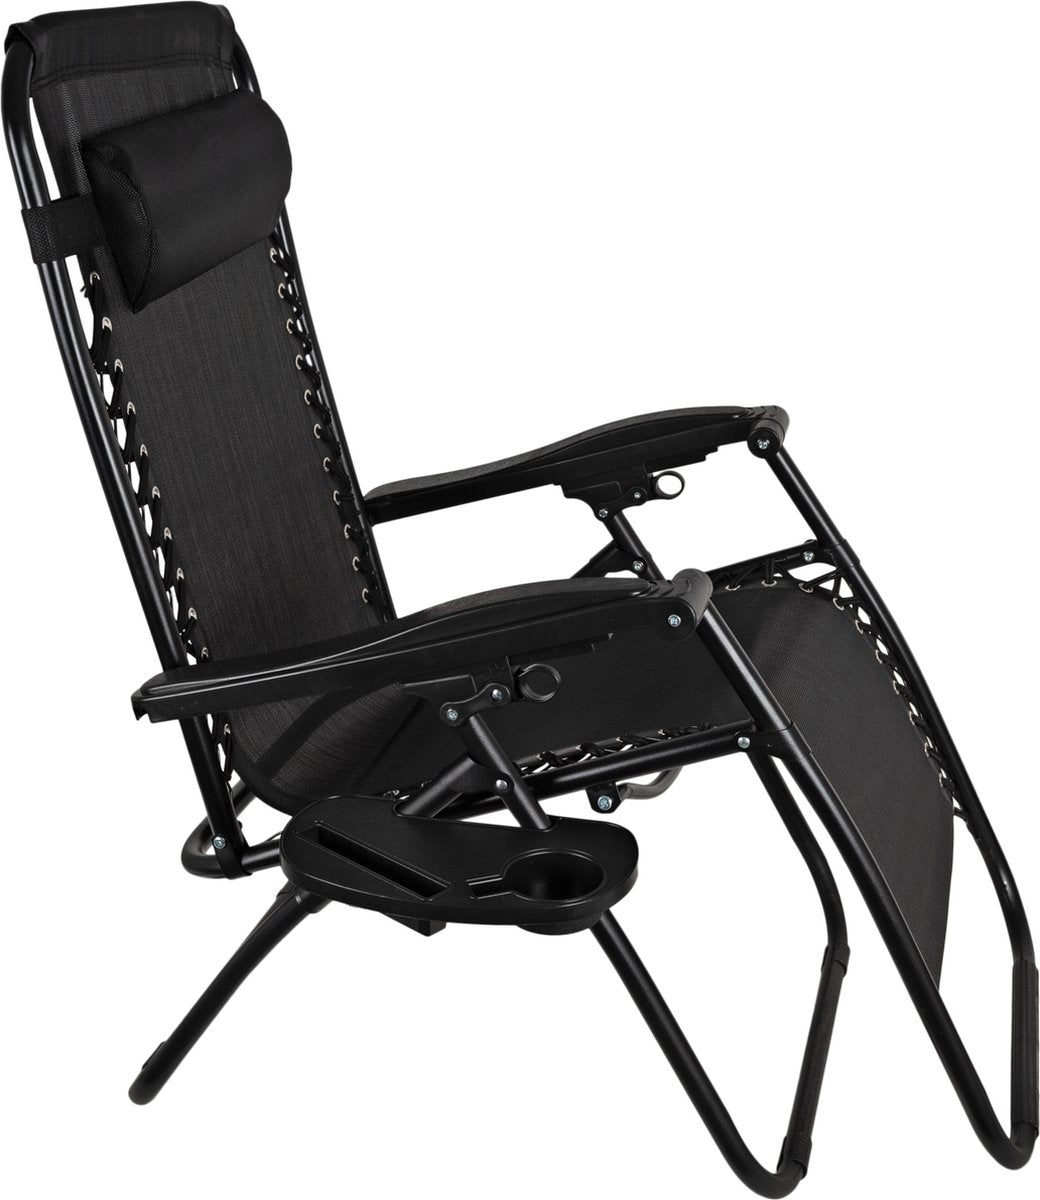 EASTWALL Foldable Garden Chair Lounger Black